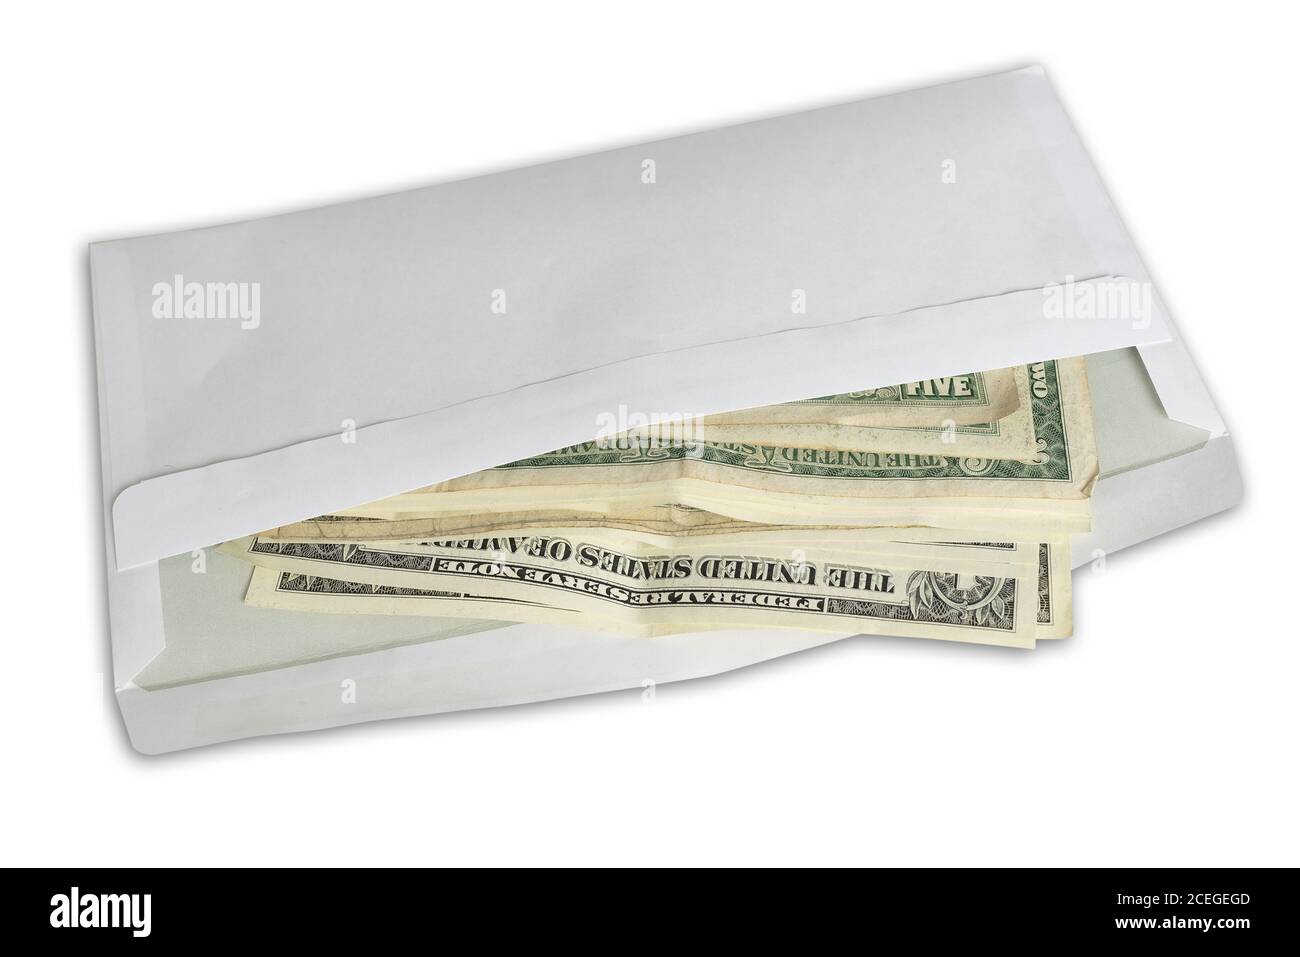 vue en grand angle des billets de dollars dans enveloppe blanche isolée sur fond blanc Banque D'Images